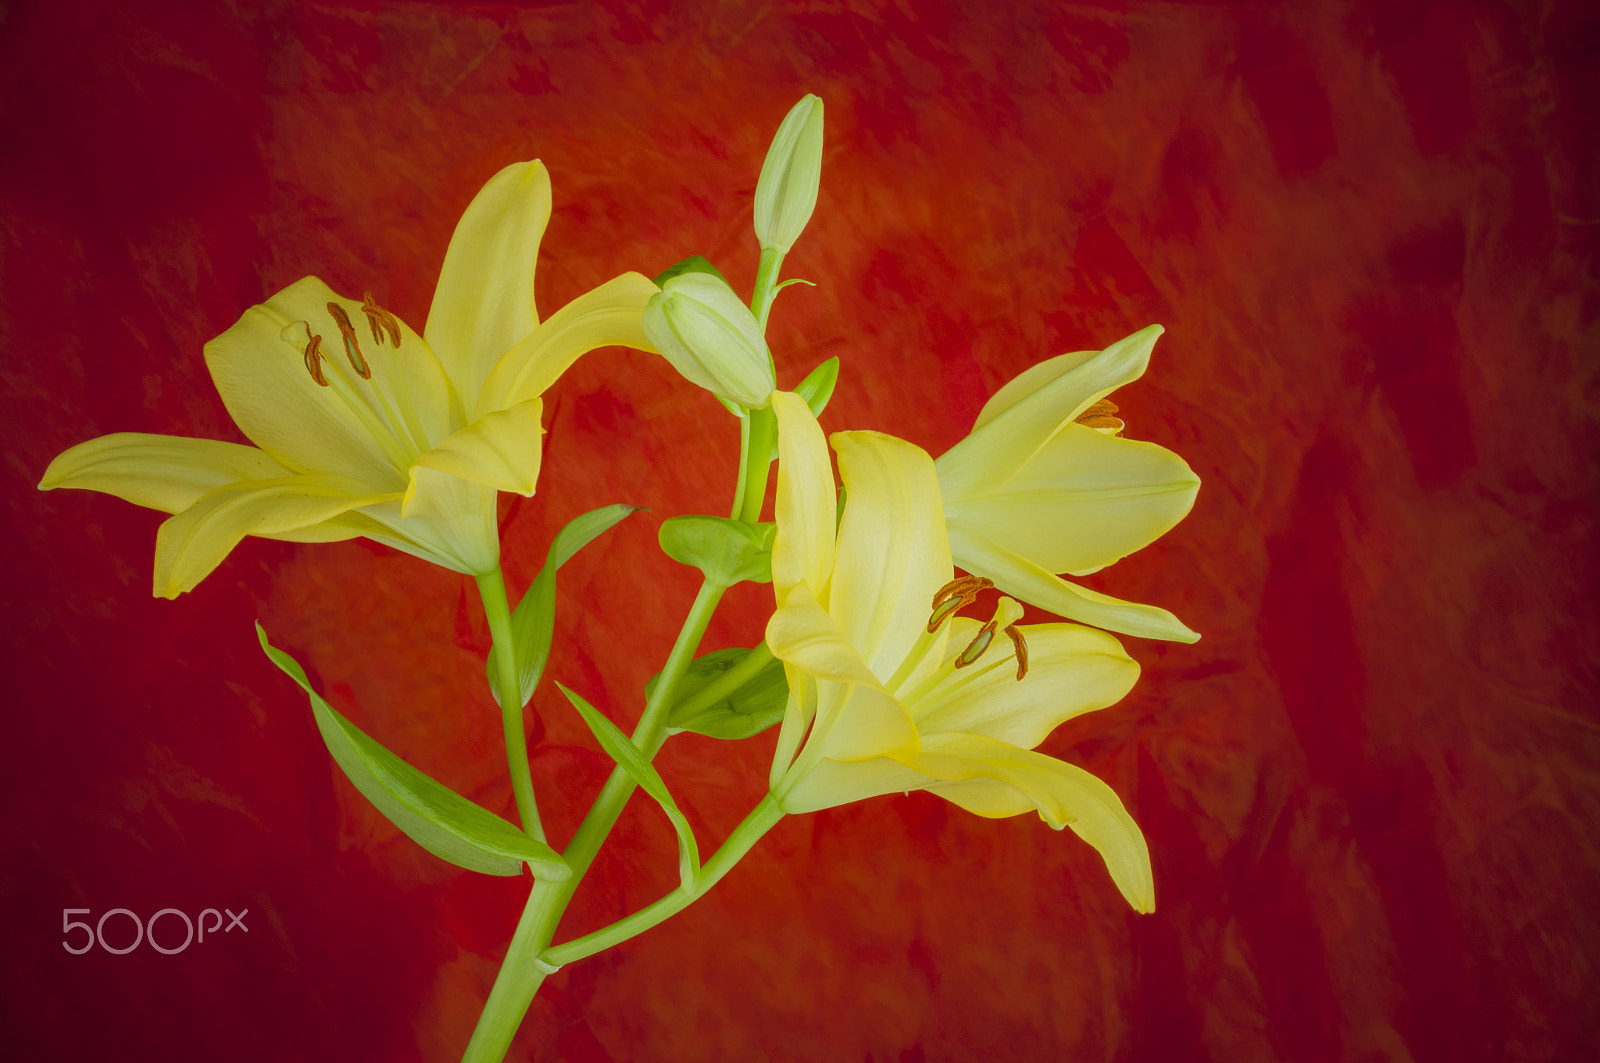 AF Zoom-Nikkor 35-70mm f/2.8D sample photo. Lily flower in bloom photography